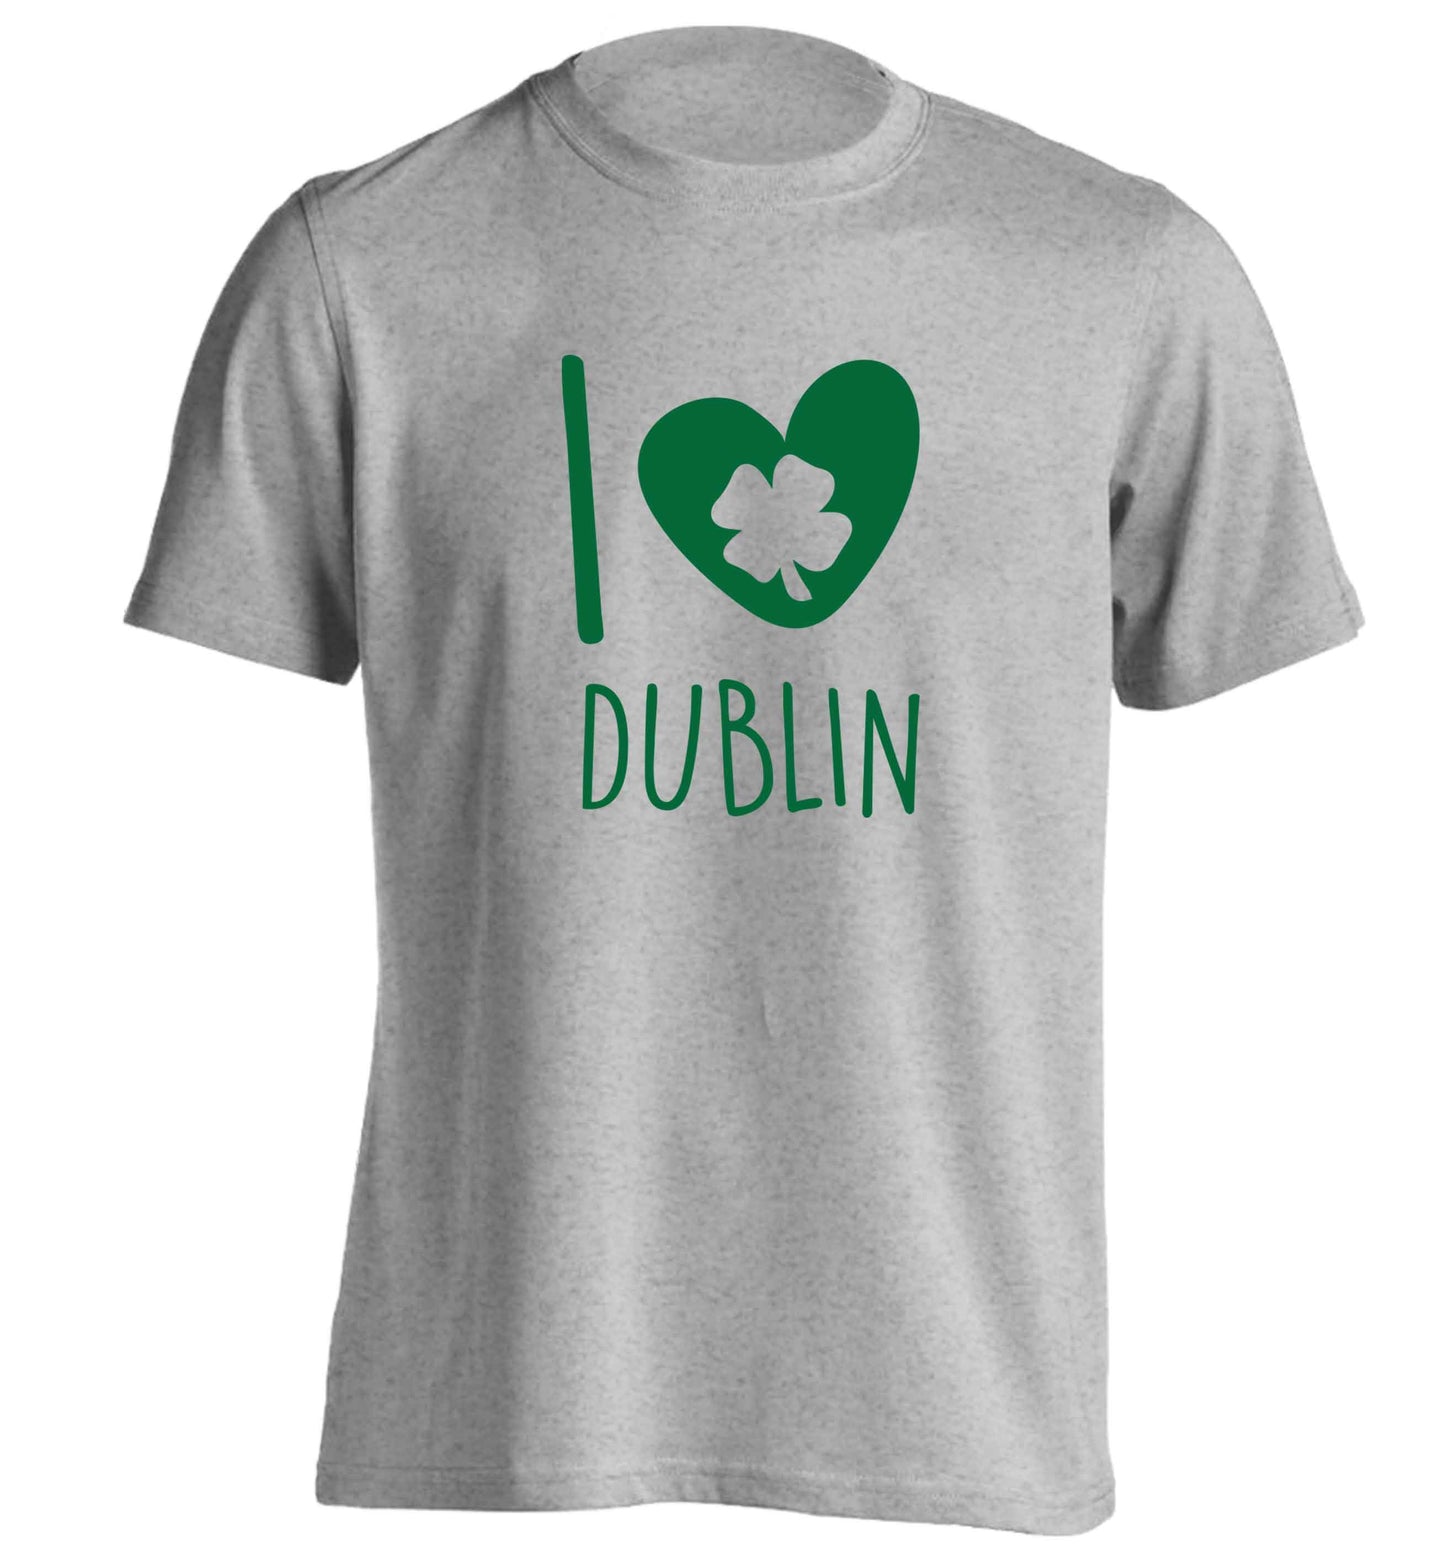 I love Dublin adults unisex grey Tshirt 2XL